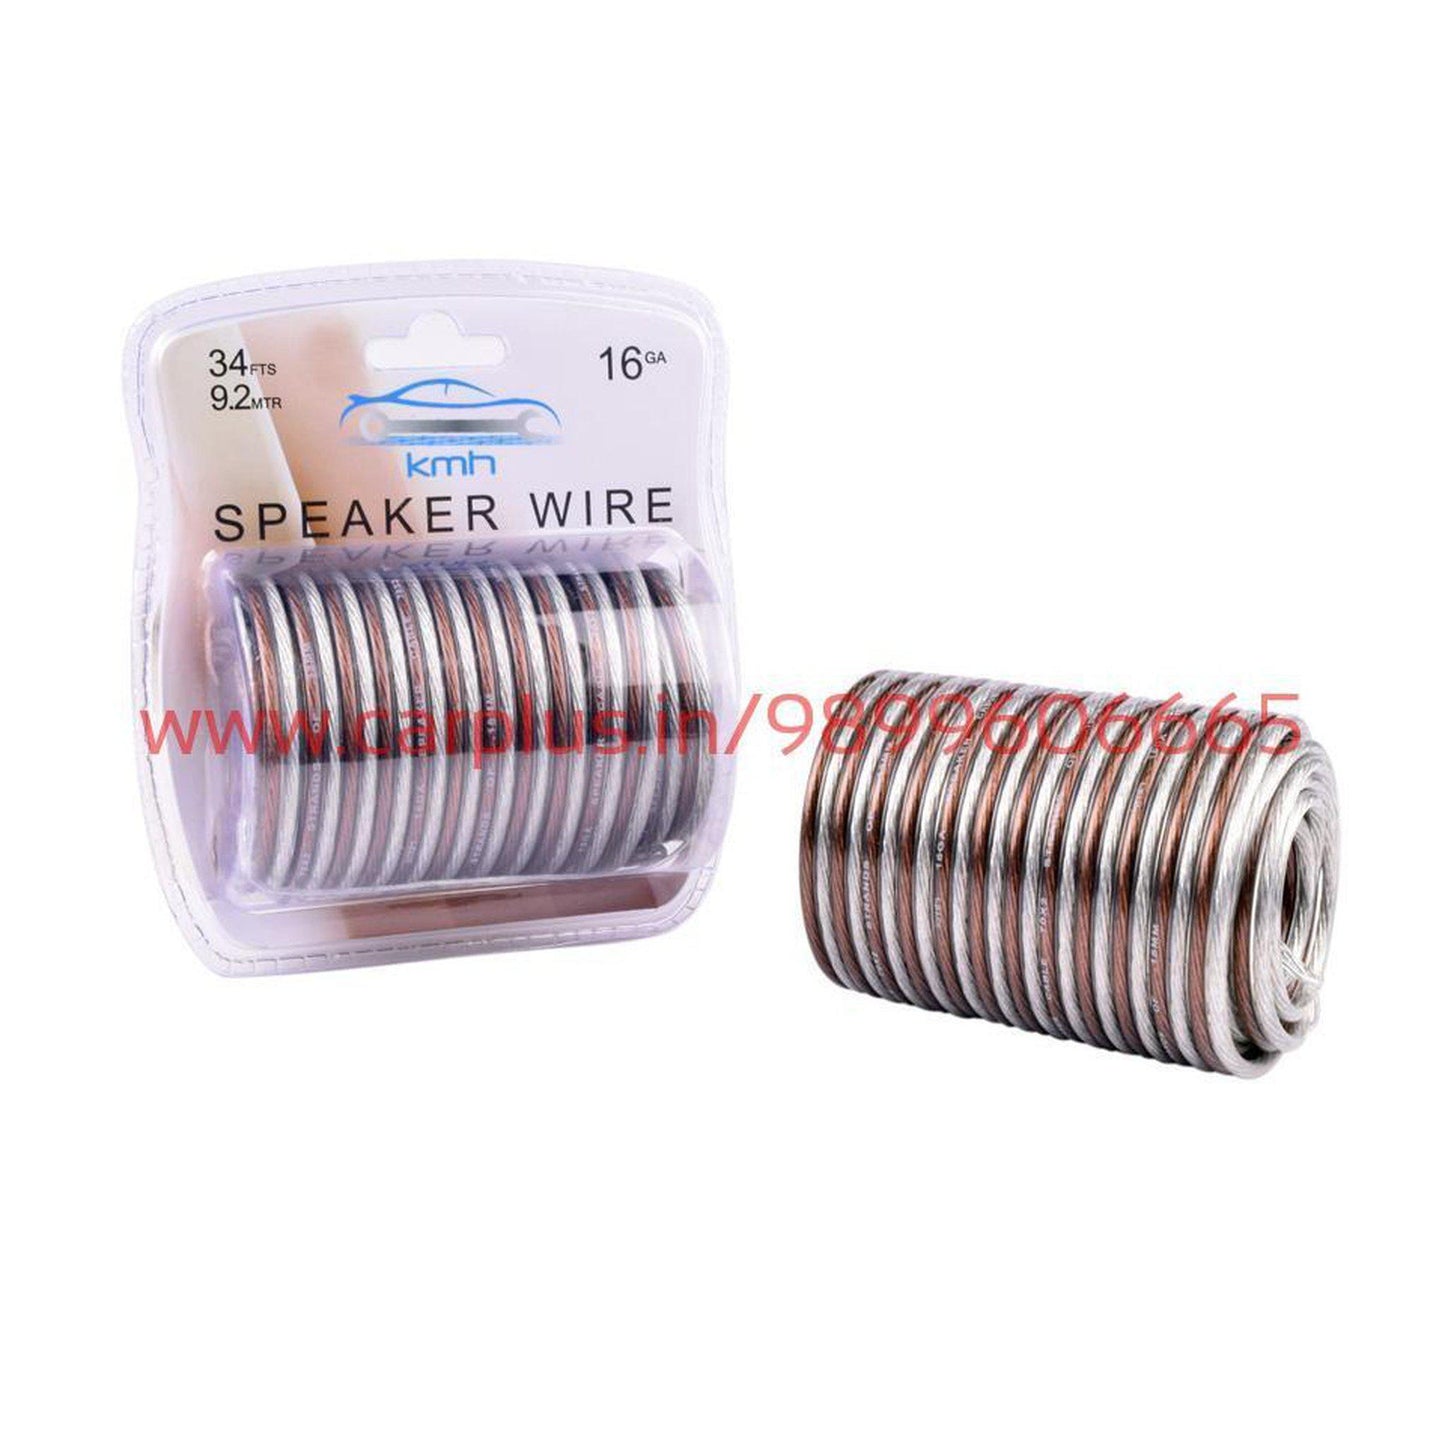 
                  
                    KMH Speaker Wire Roll KMH-WIRING SPEAKER WIRE.
                  
                